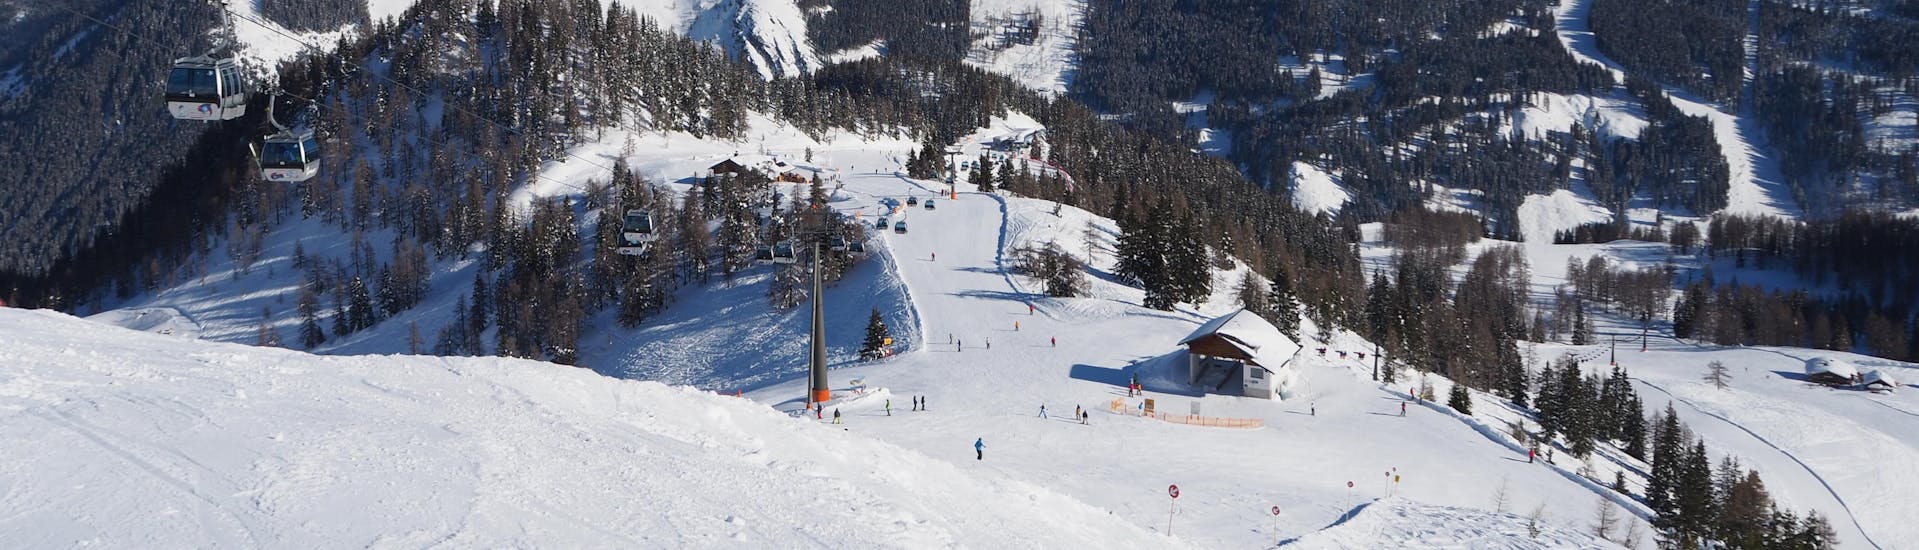 Ausblick auf die sonnige Berglandschaft beim Skifahren lernen mit einer Skischule im Skigebiet Radstadt-Altenmarkt.